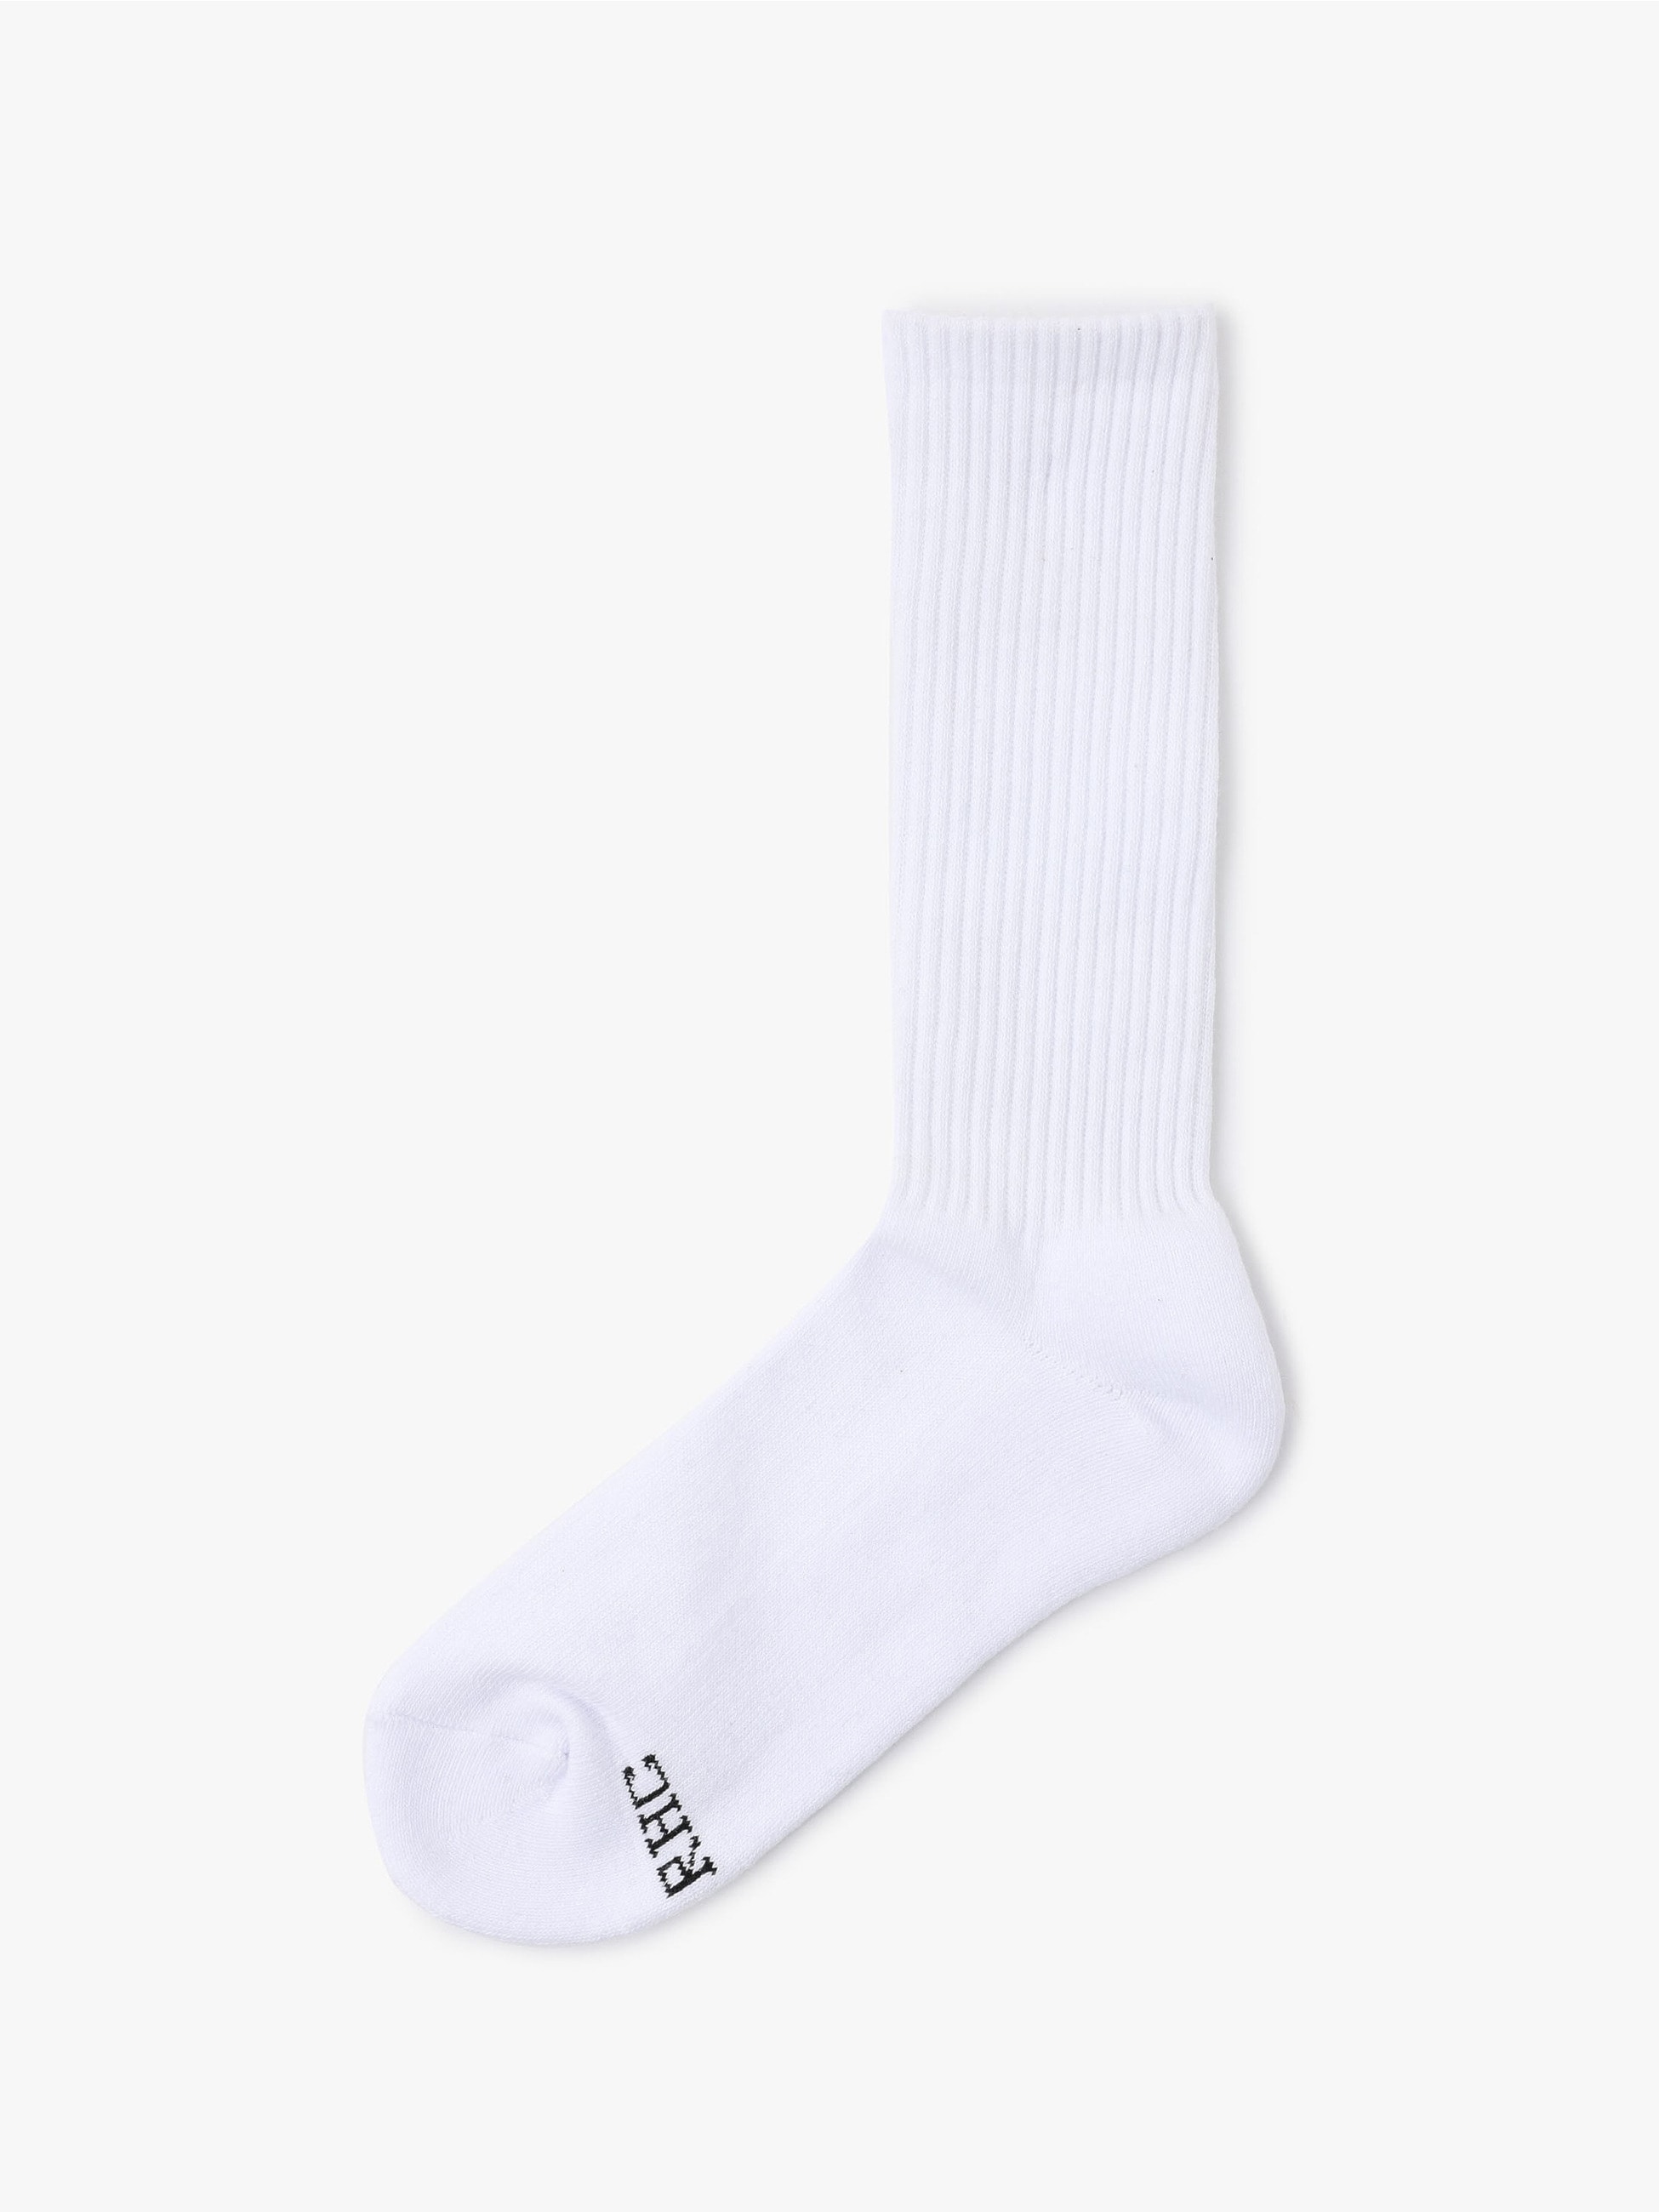 Full Length Socks 詳細画像 other 1